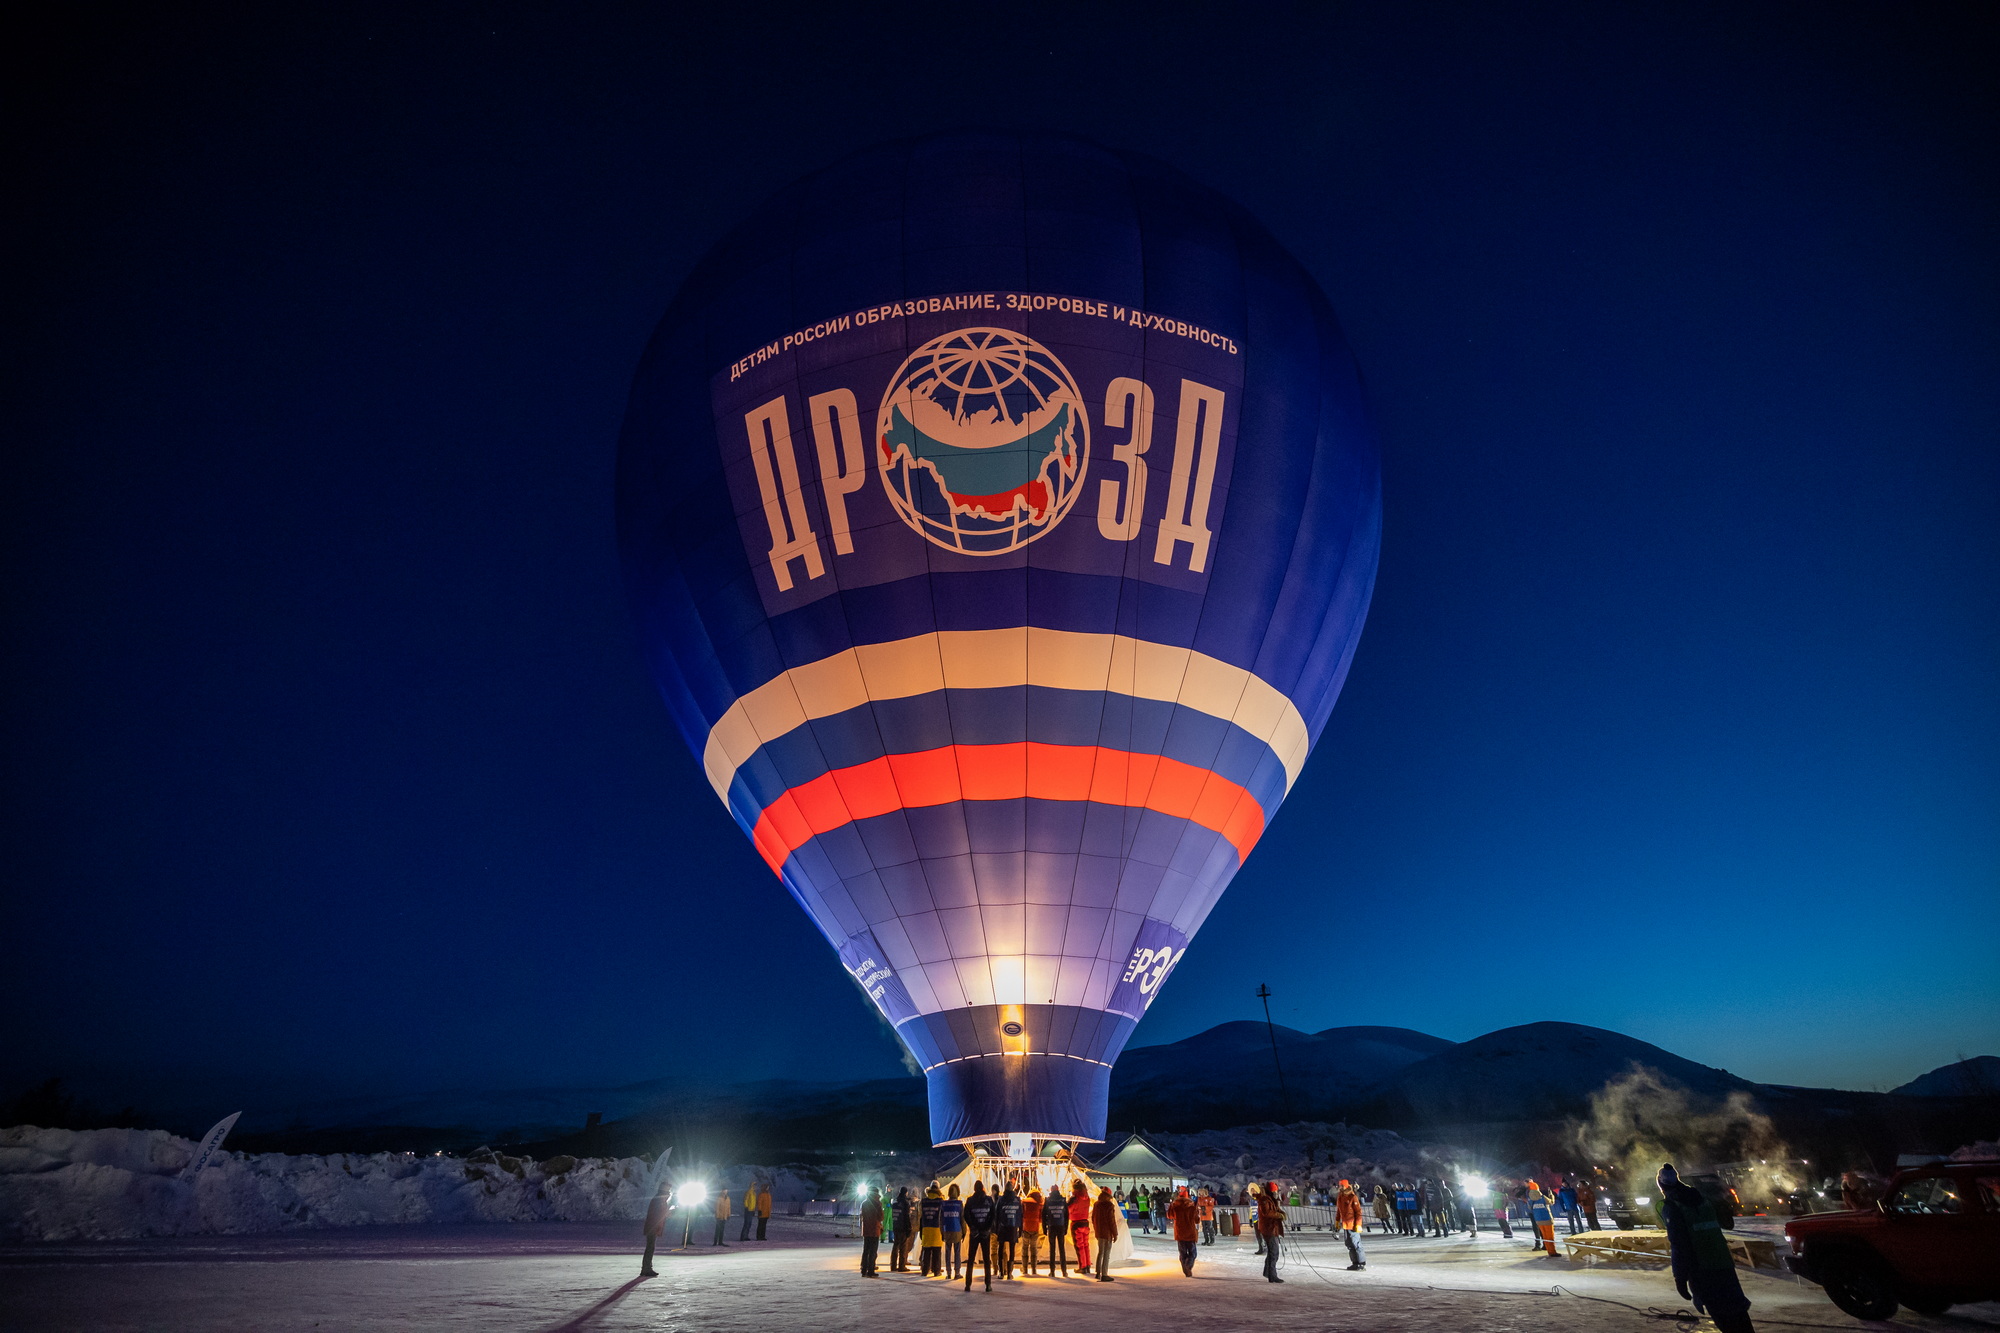 Из Мурманской области стартовал трансконтинентальный перелет на тепловом воздушном шаре